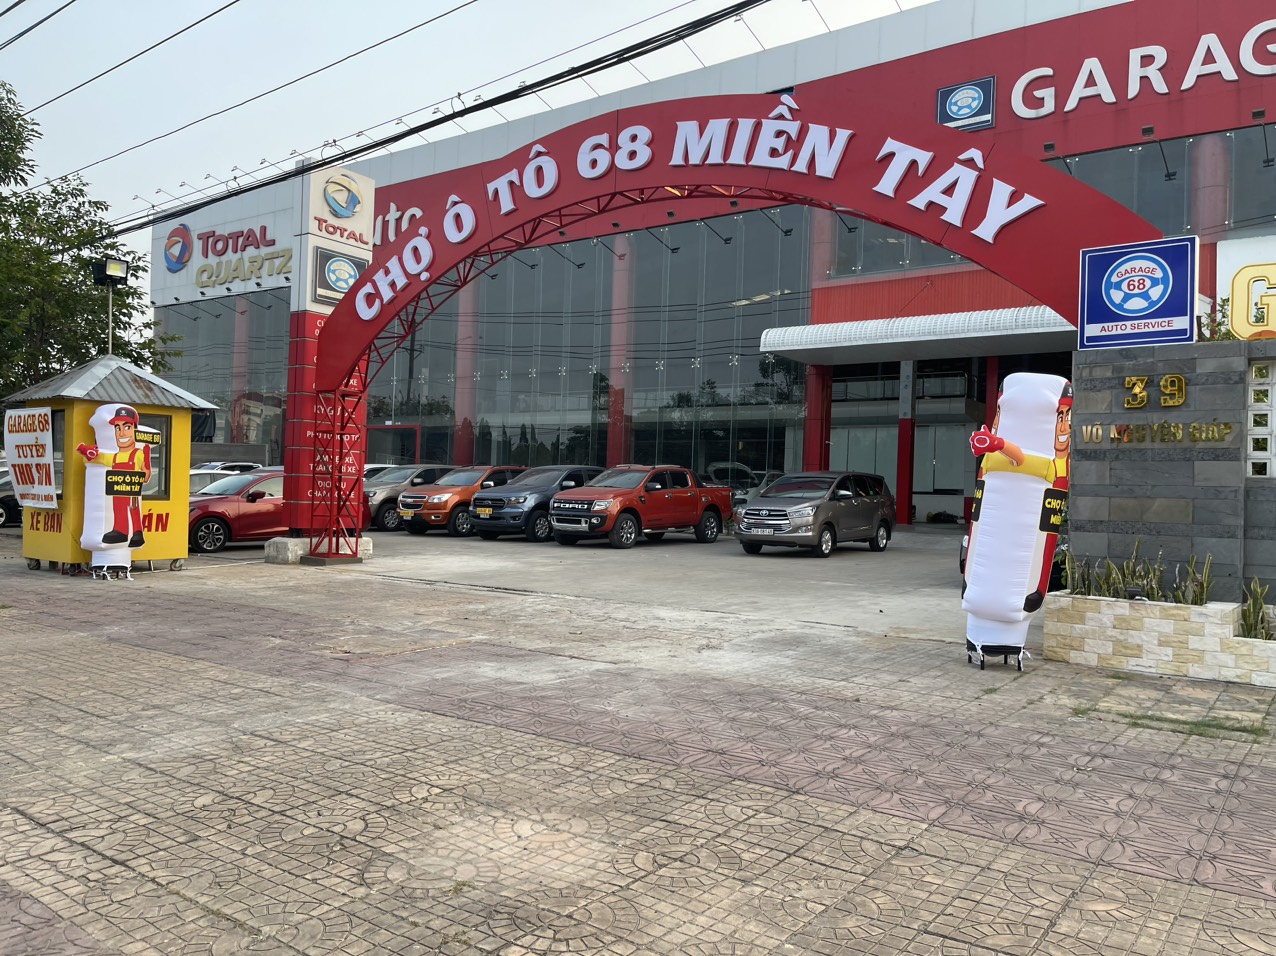 AUTO 68 CẦN THƠ  Chợ Tốt  Website Mua Bán Rao Vặt Trực Tuyến Hàng Đầu  Của Người Việt